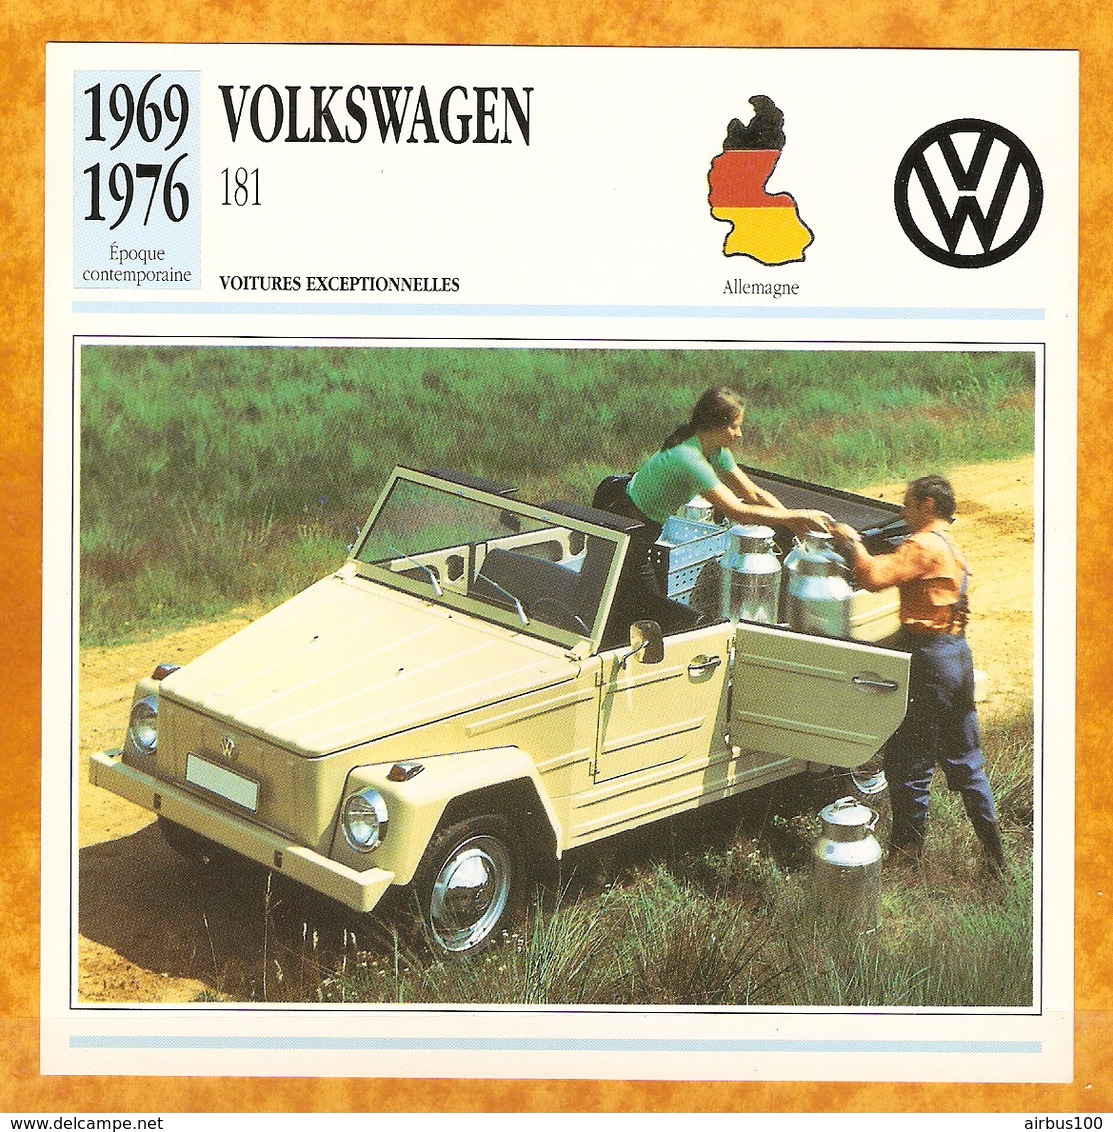 1969 ALLEMAGNE VIEILLE VOITURE VOLKSWAGEN 181 - GERMANY OLD CAR - ALEMANIA VIEJO COCHE - DEUTSCHLAND ALTES AUTO - Autos